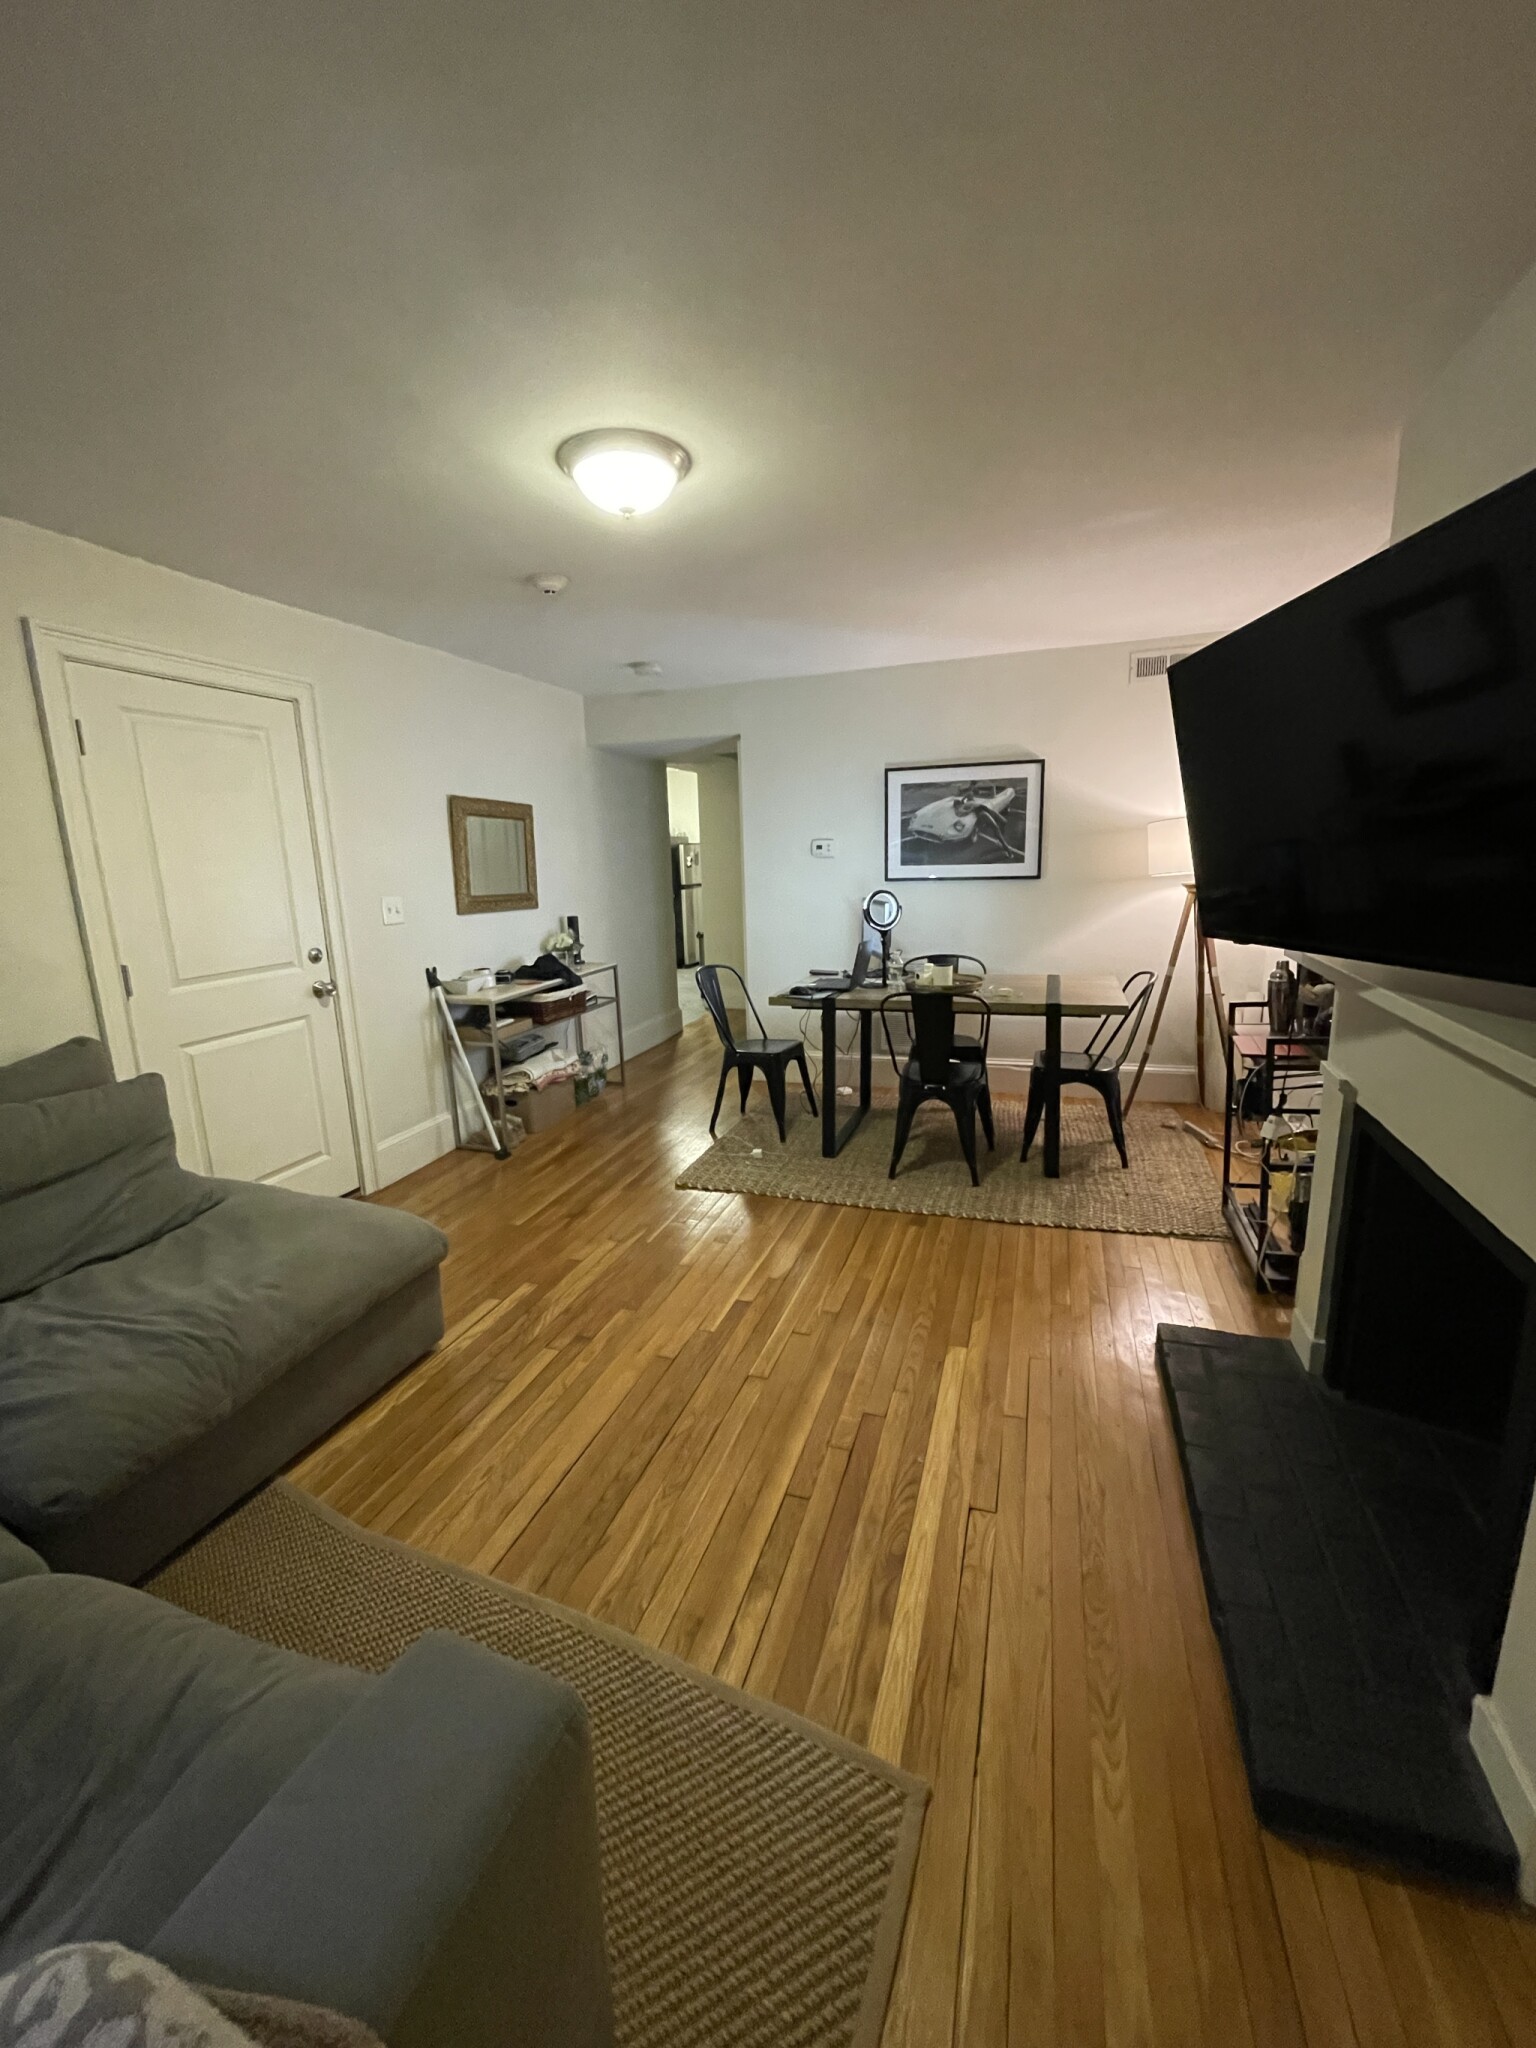 Photos of apartment on Grove,Boston MA 02114